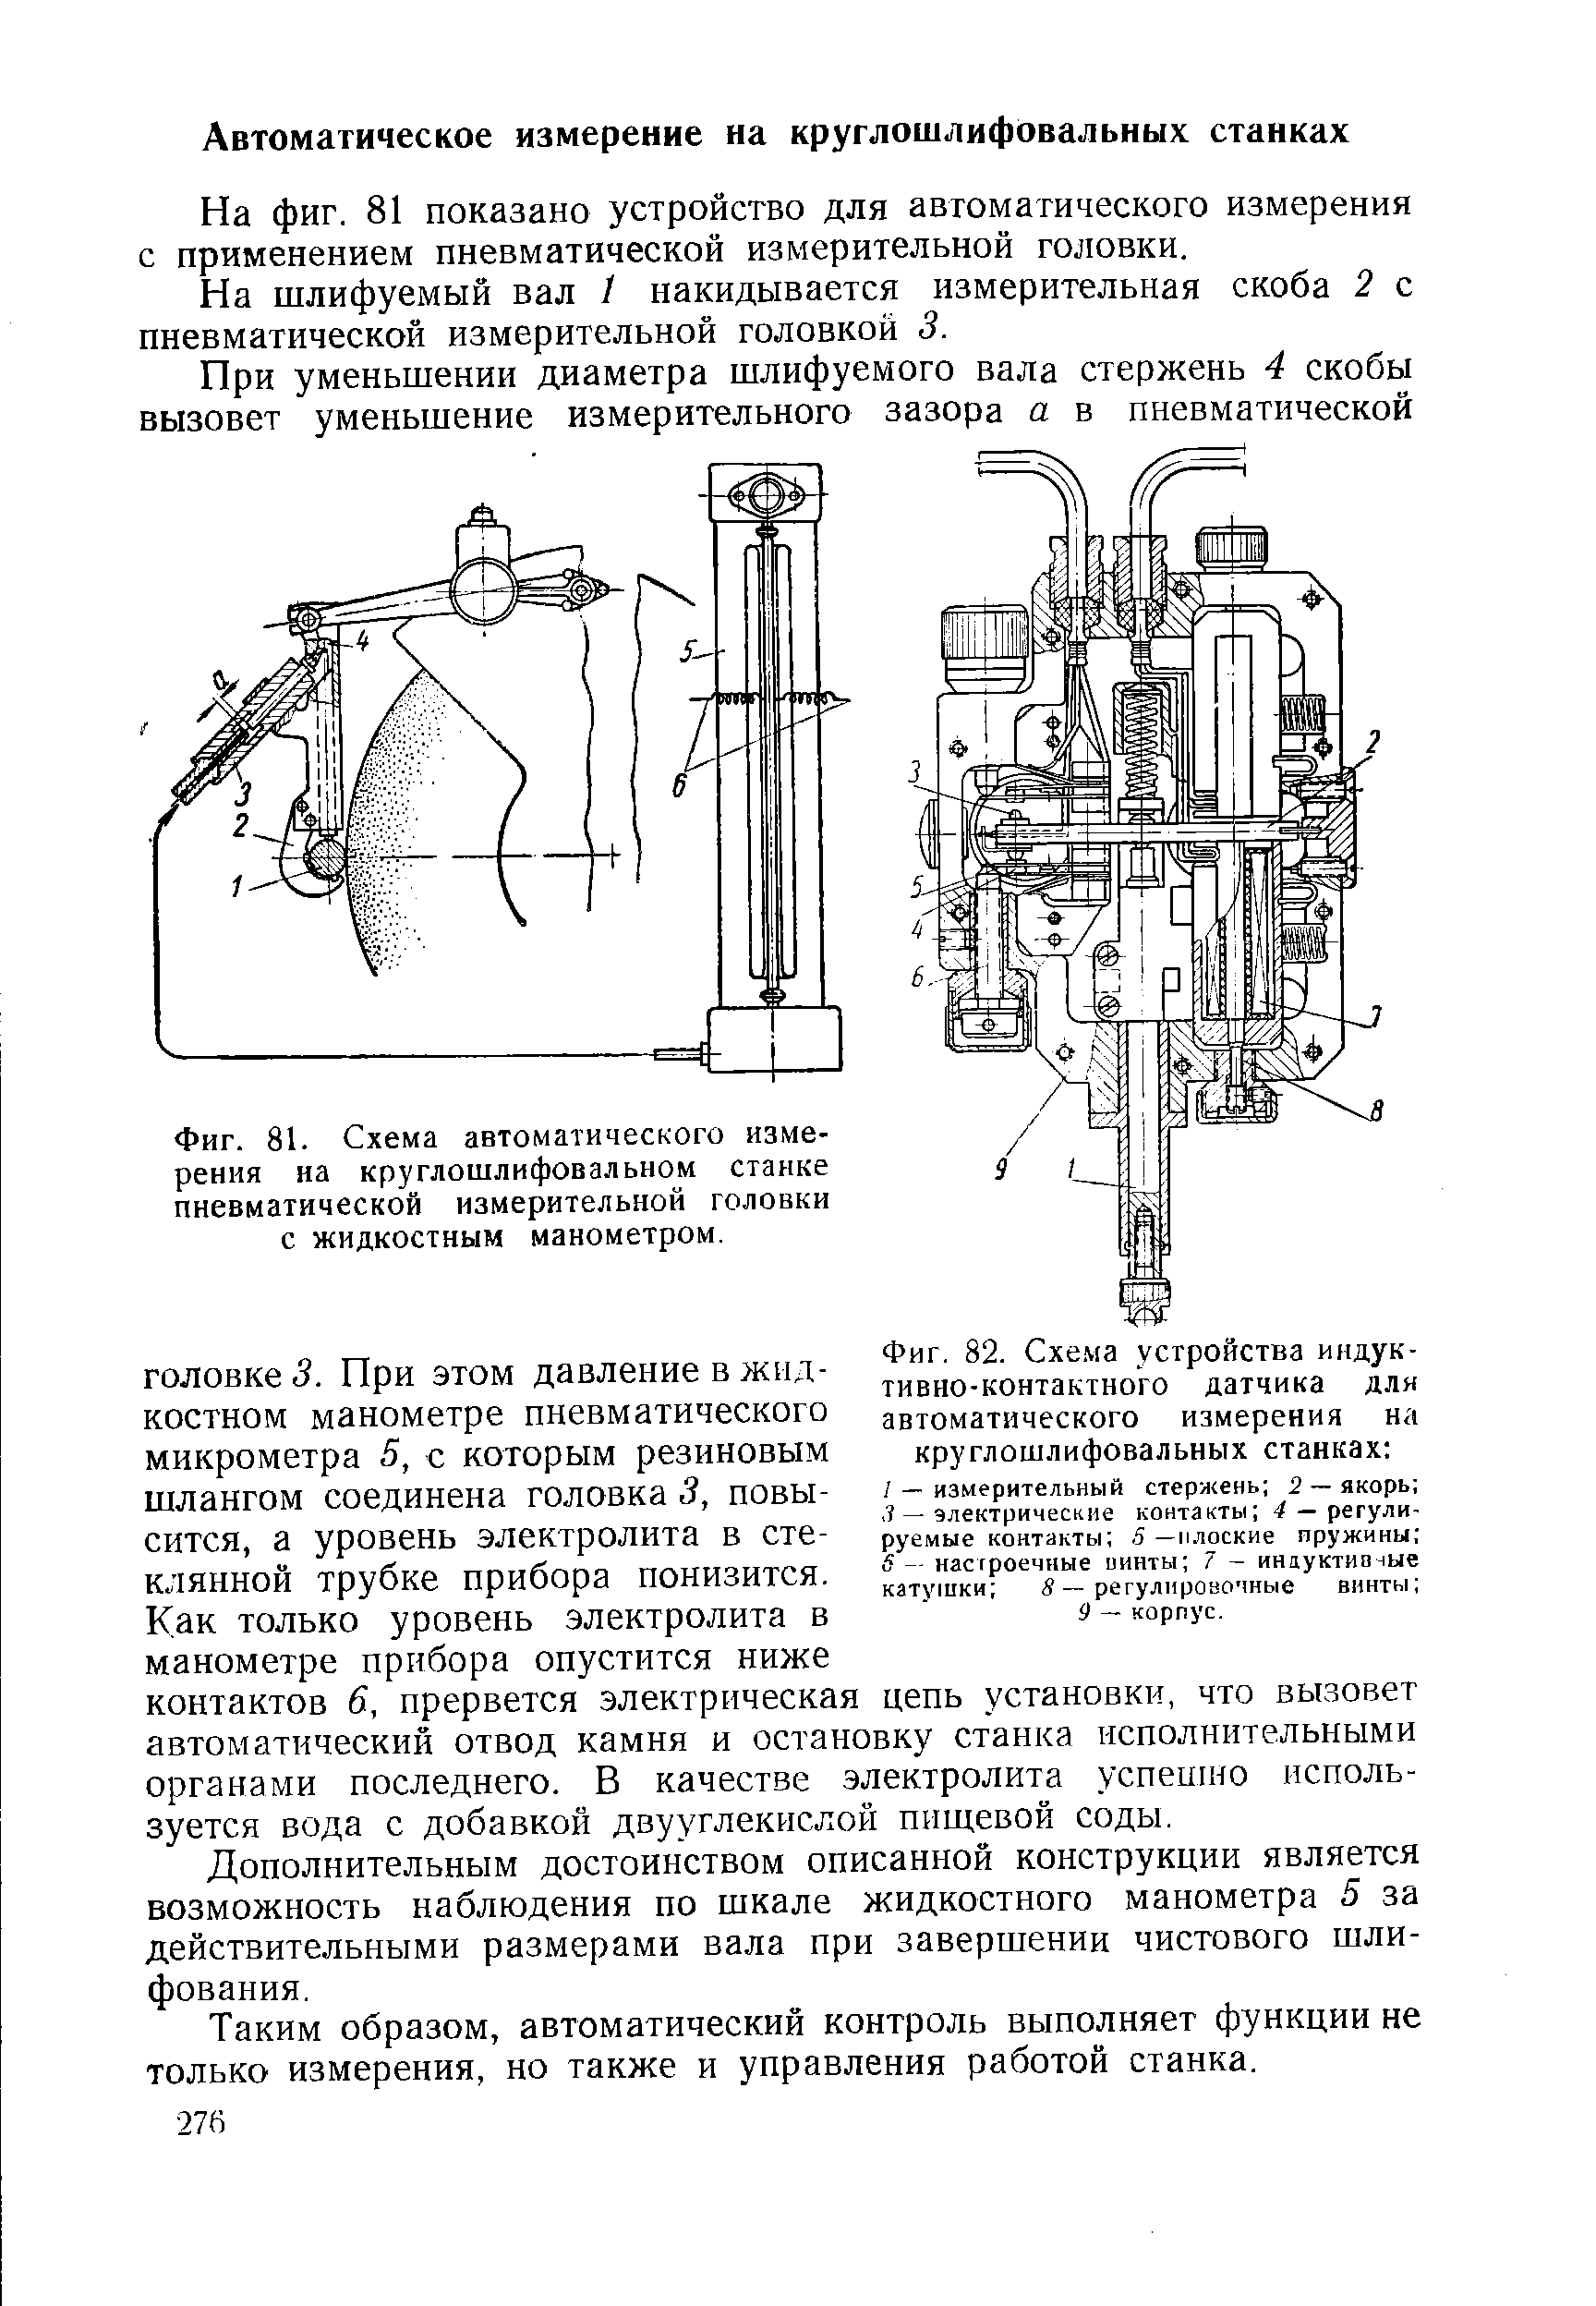 Фиг. 81. Схема автоматического измерения на круглошлифовальном станке пневматической измерительной головки с жидкостным манометром.
